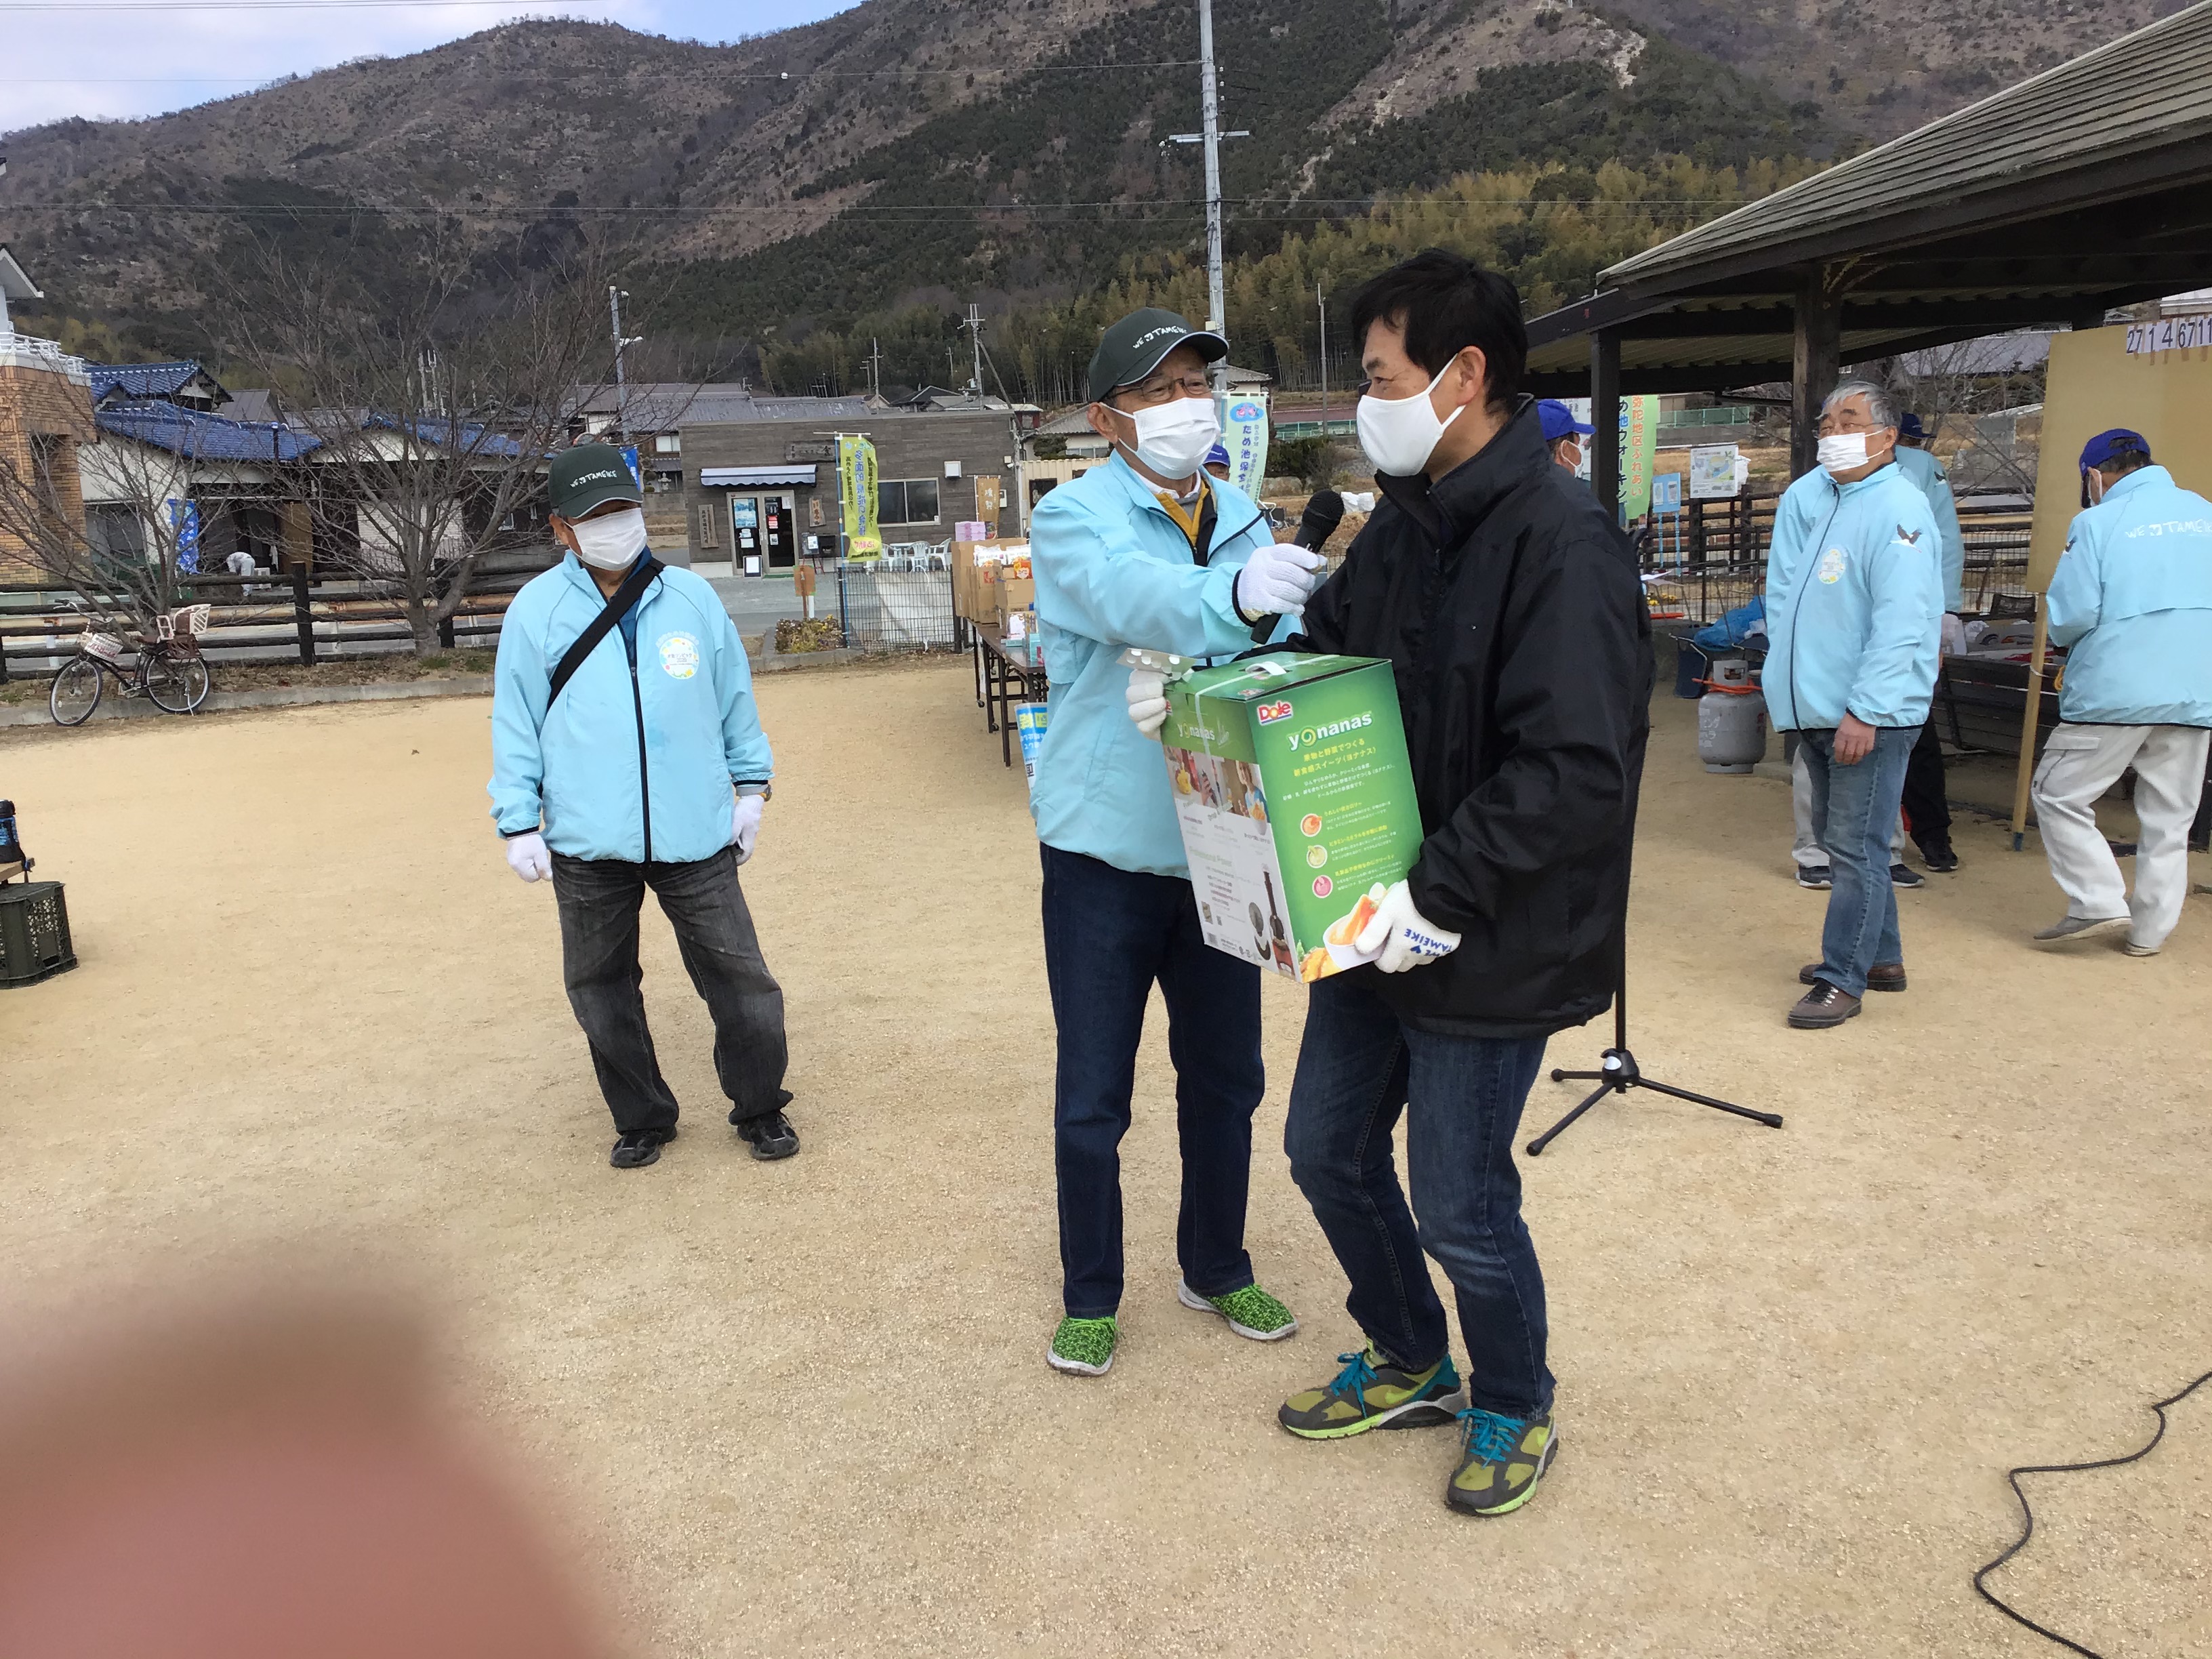 ビンゴ❢❢　一等賞は、東播磨播磨県民局地域振興室水辺地域づくり担当の長谷坂班長が射止めました。スムージー作成機とか。来年は誰が当たりますか。全員色々景品が貰えました。